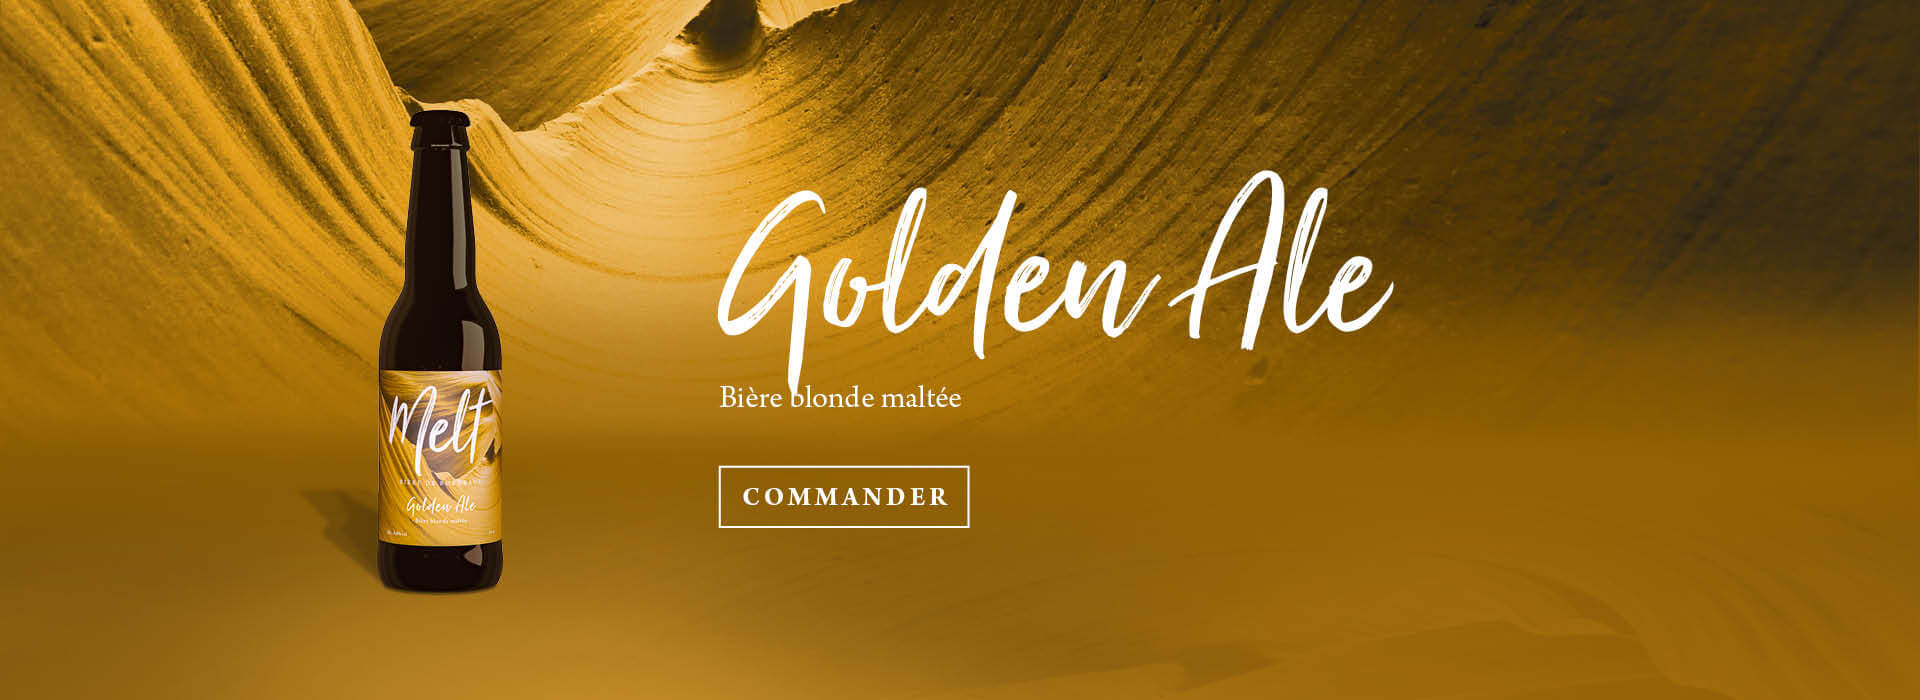 Commander la Golden Ale de la Brasserie Melt